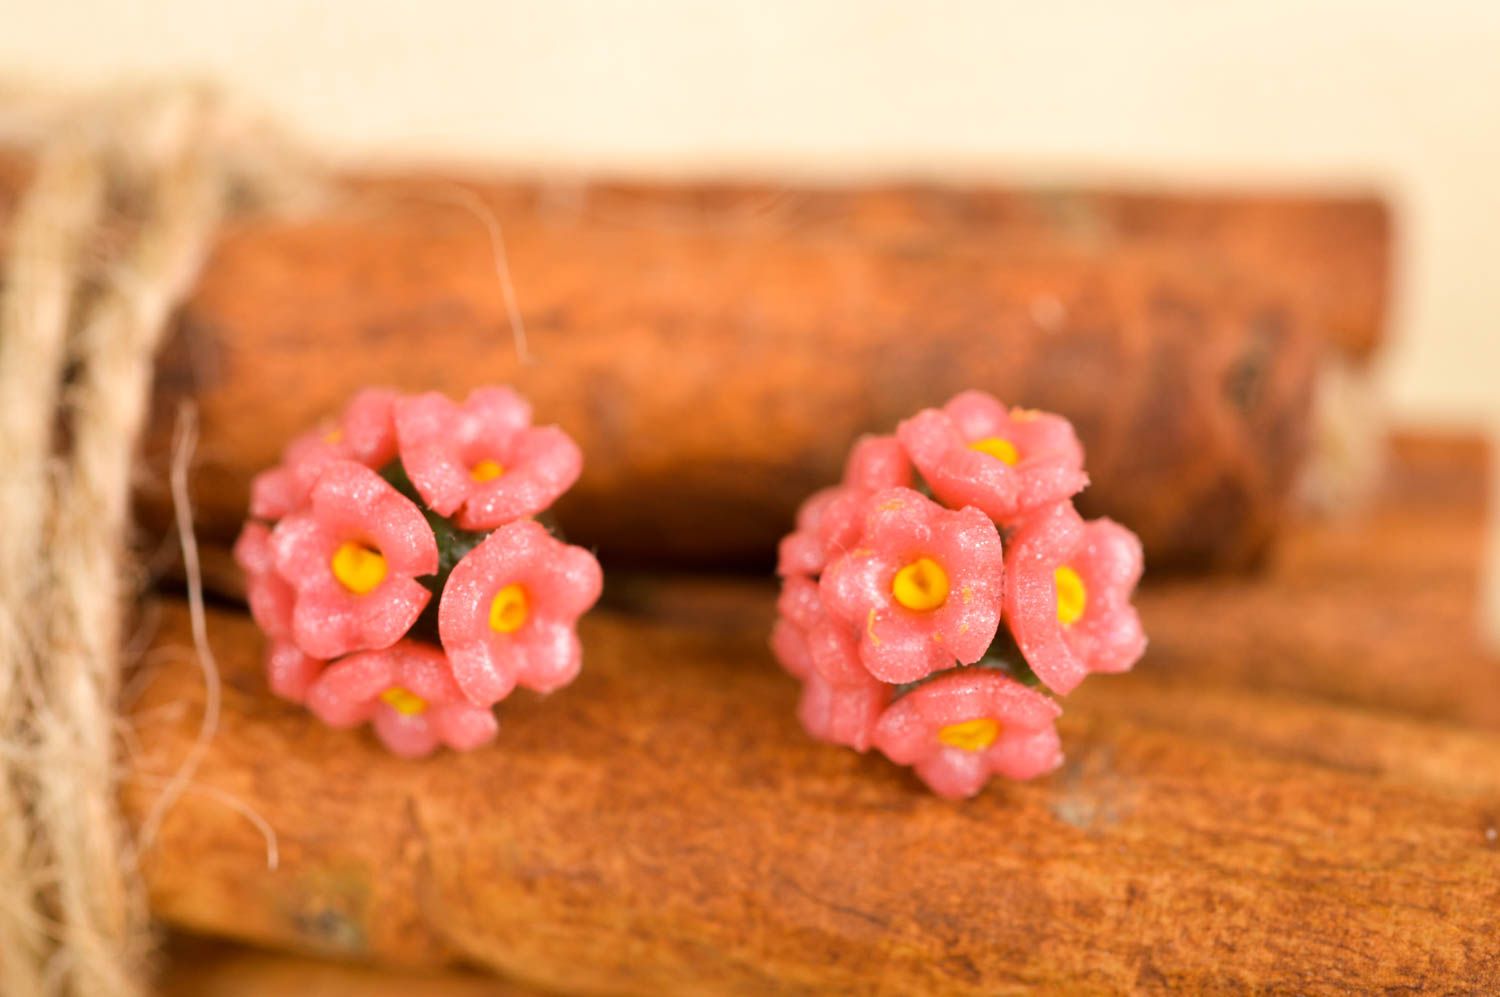 Handmade womens plastic earrings flower stud earrings artisan jewelry gift ideas photo 1